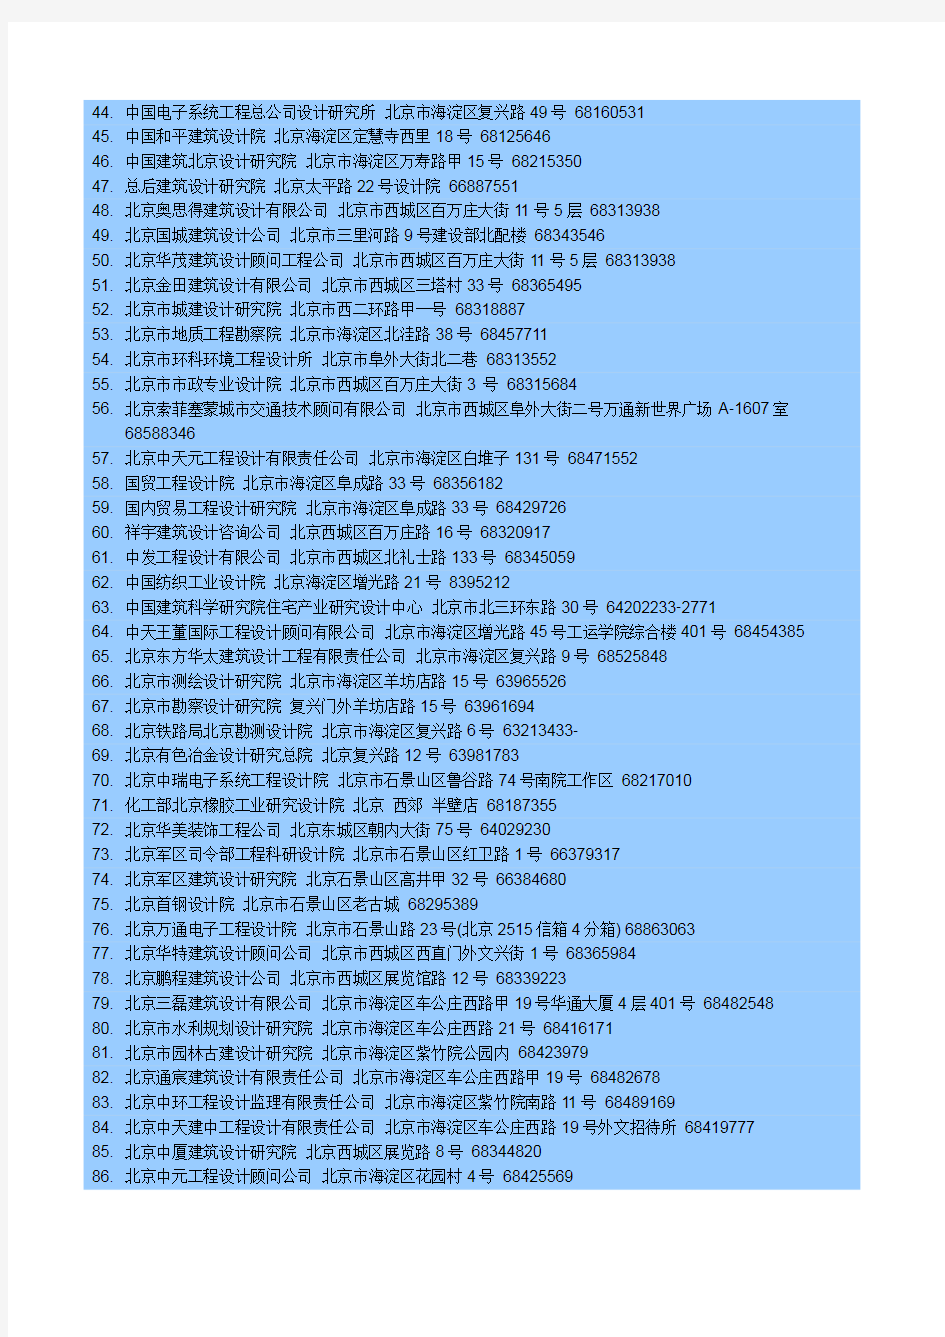 北京市甲级建筑设计单位名单